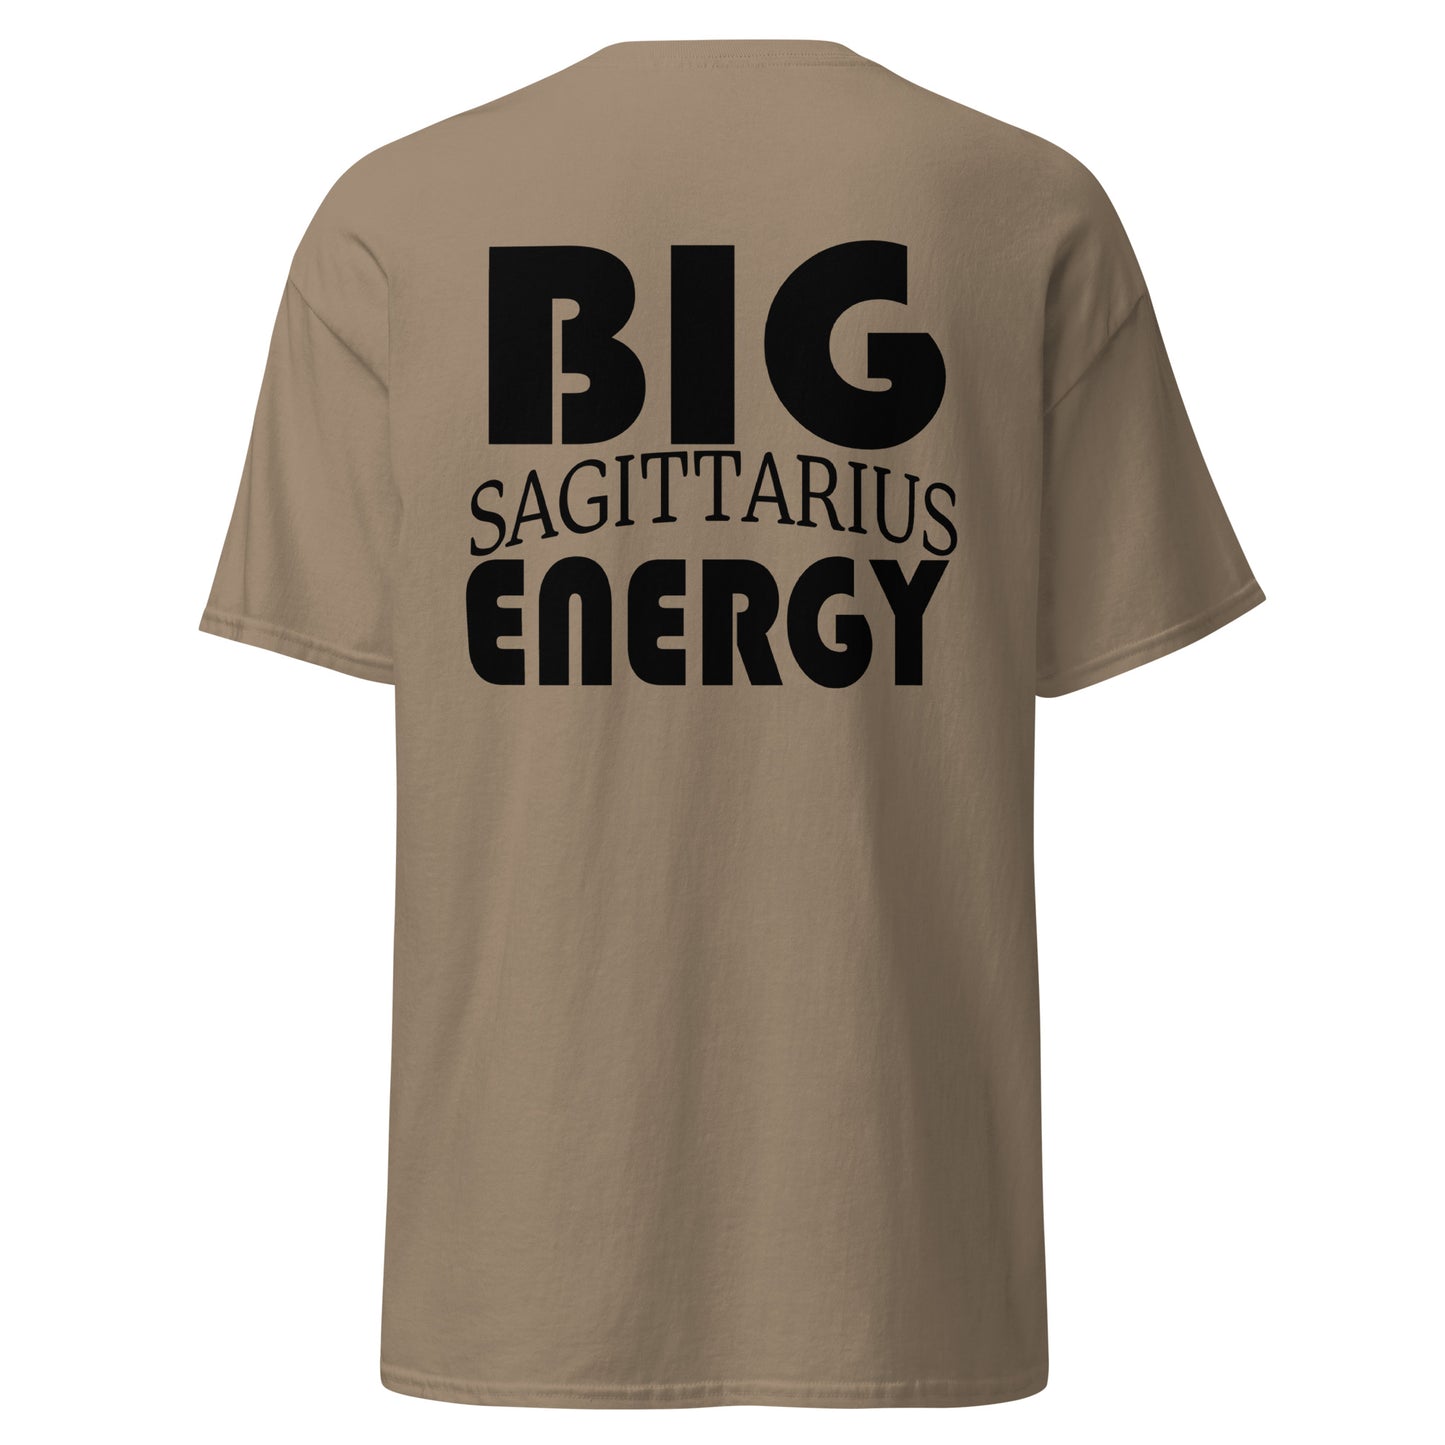 Big Sagittarius Energy Tee